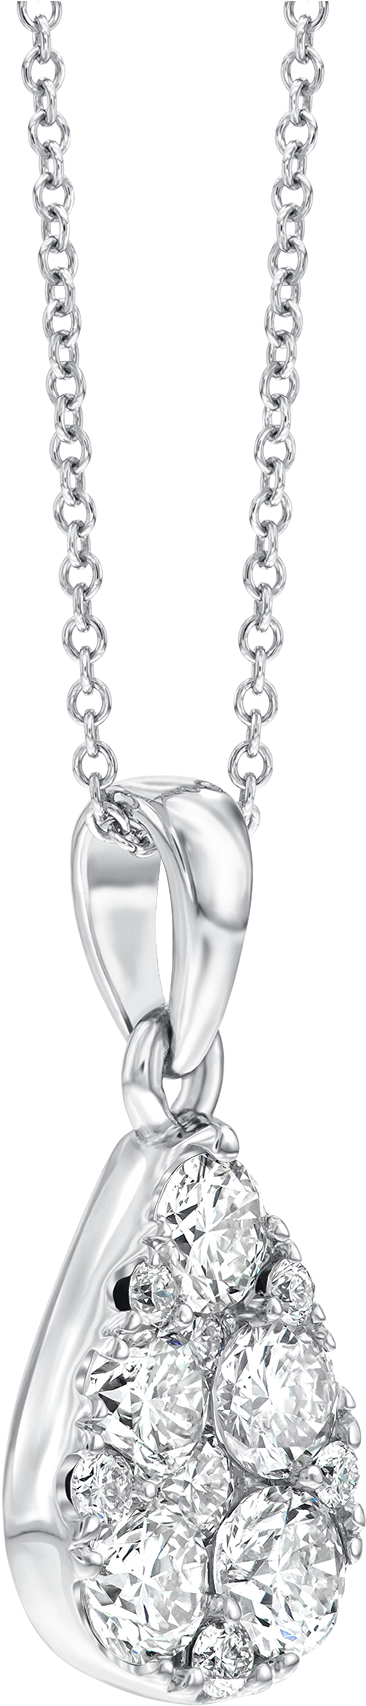 Drawn Diamonds Diamond Necklace - Fabrijoyas Warehouse No. 2 (2000x2000)